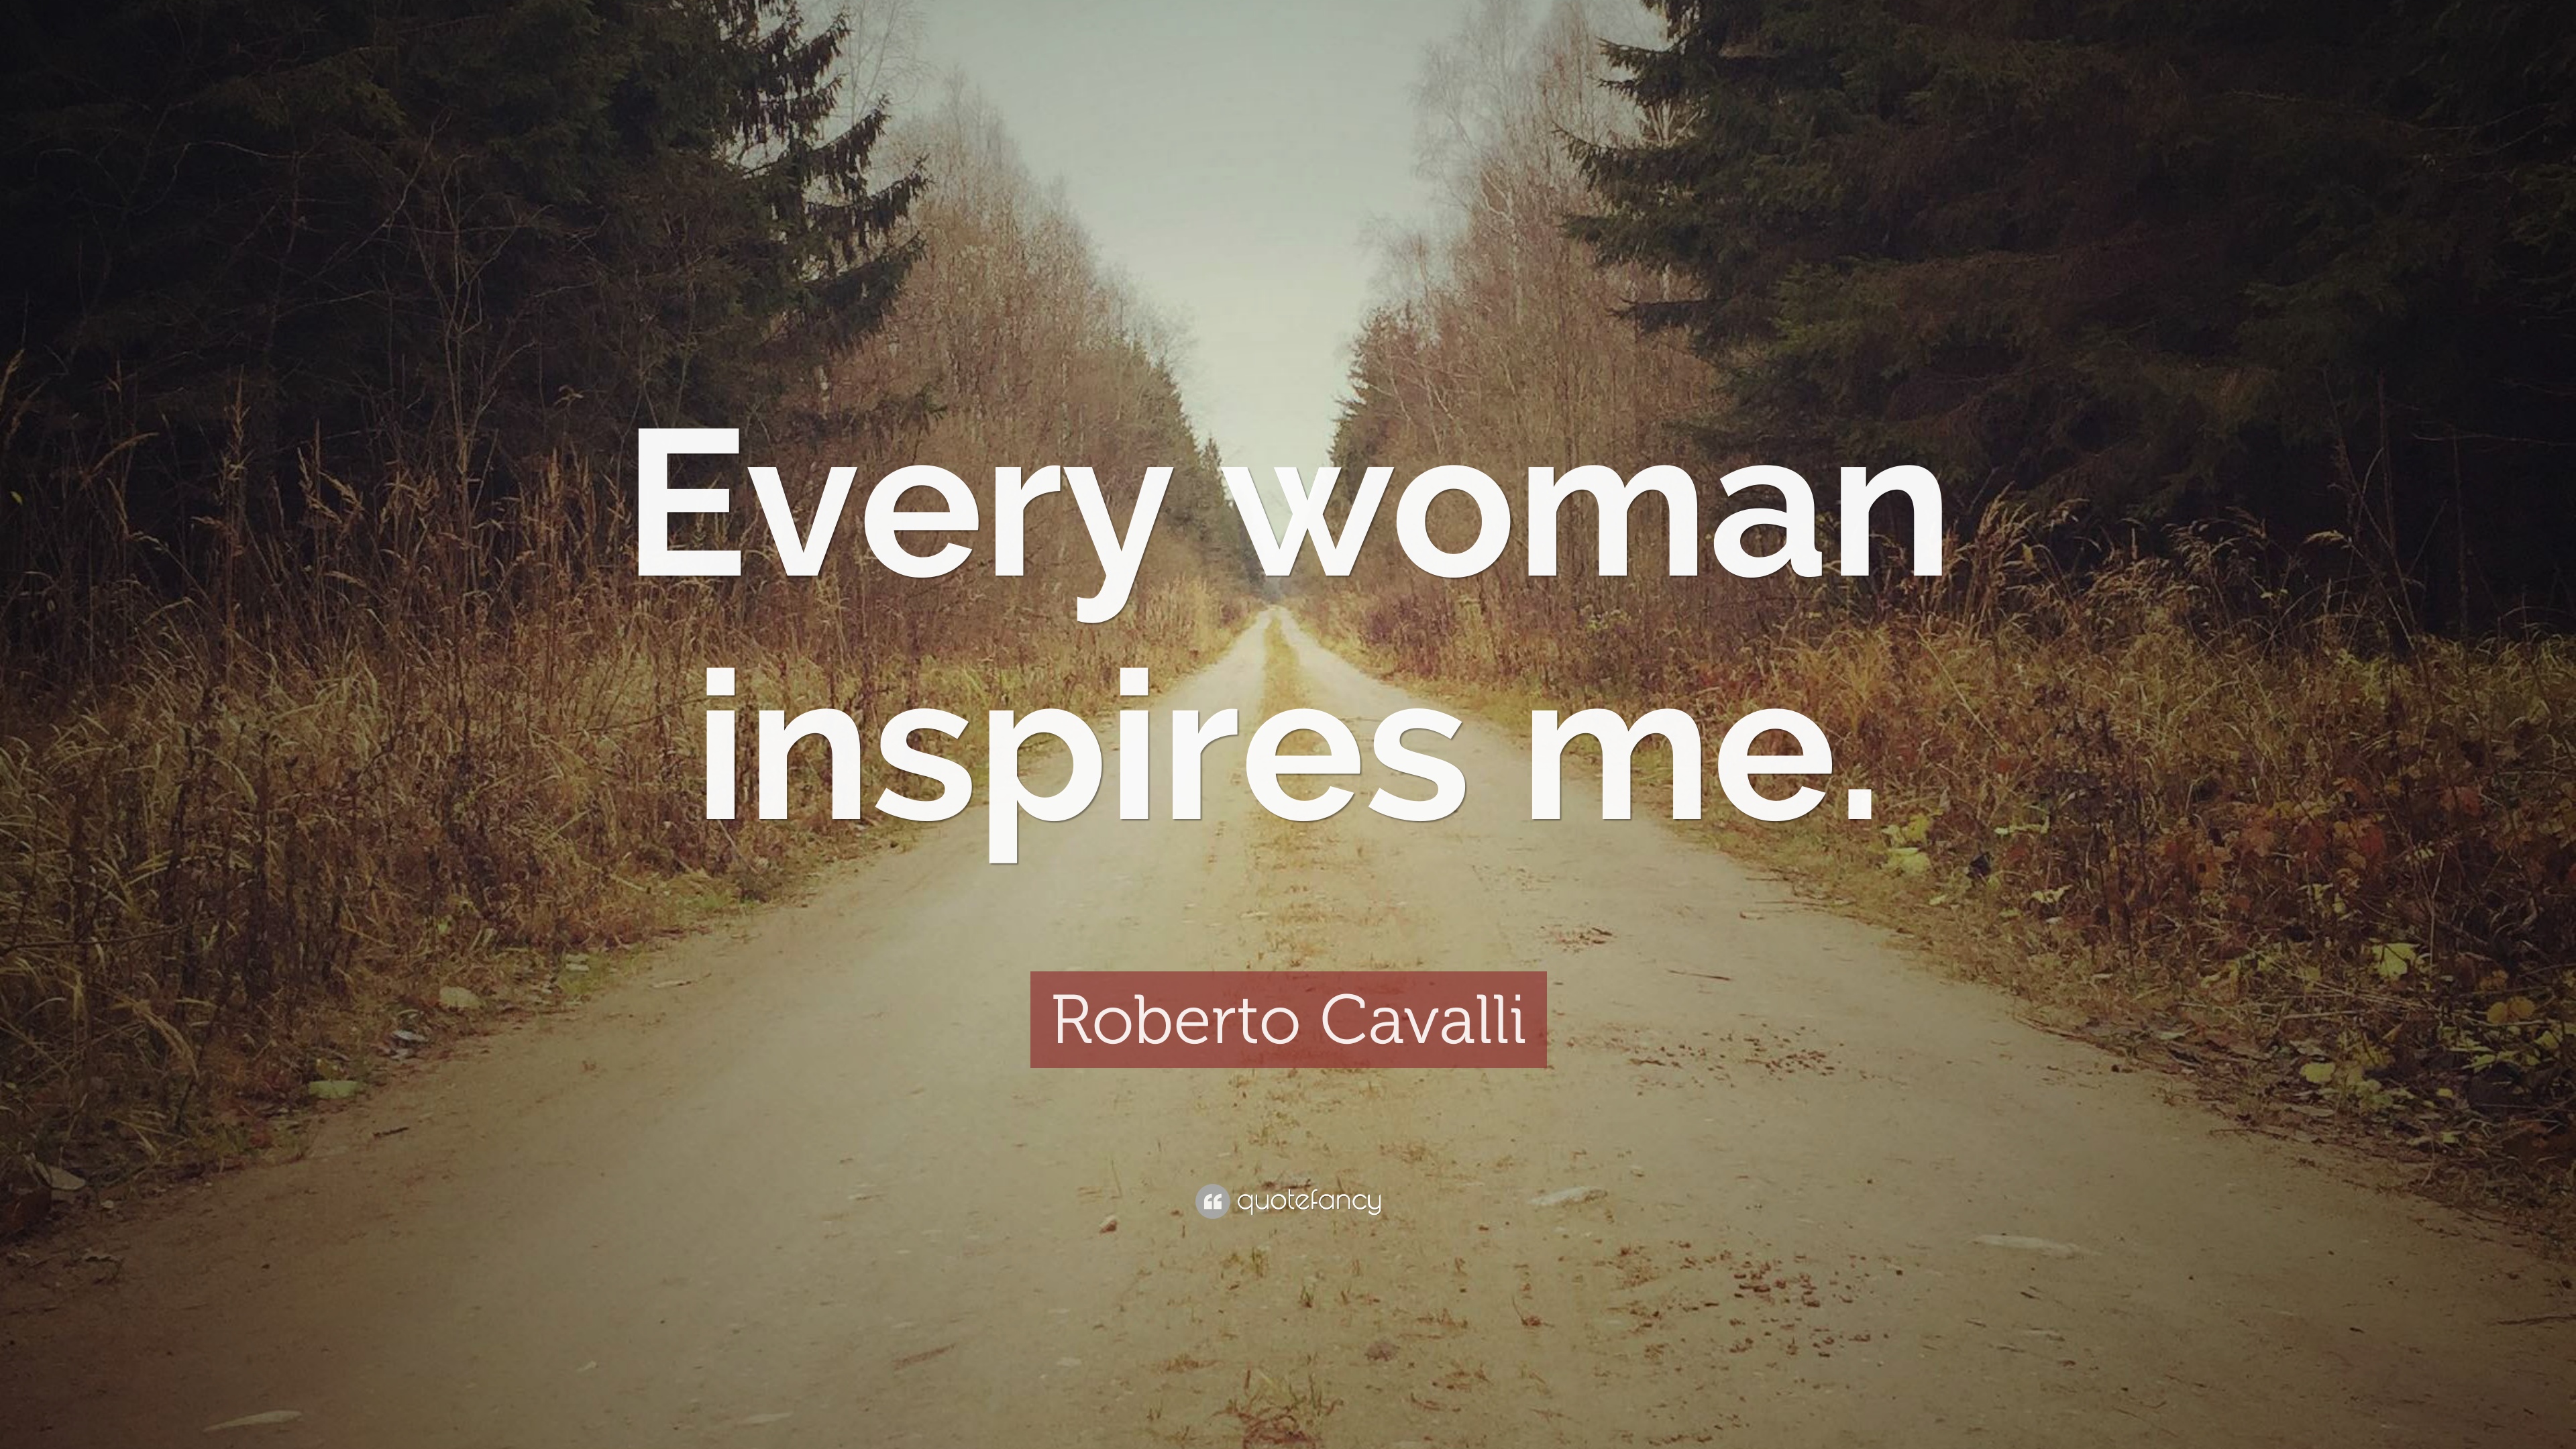 Roberto Cavalli Quote: “Every woman inspires me.” 10